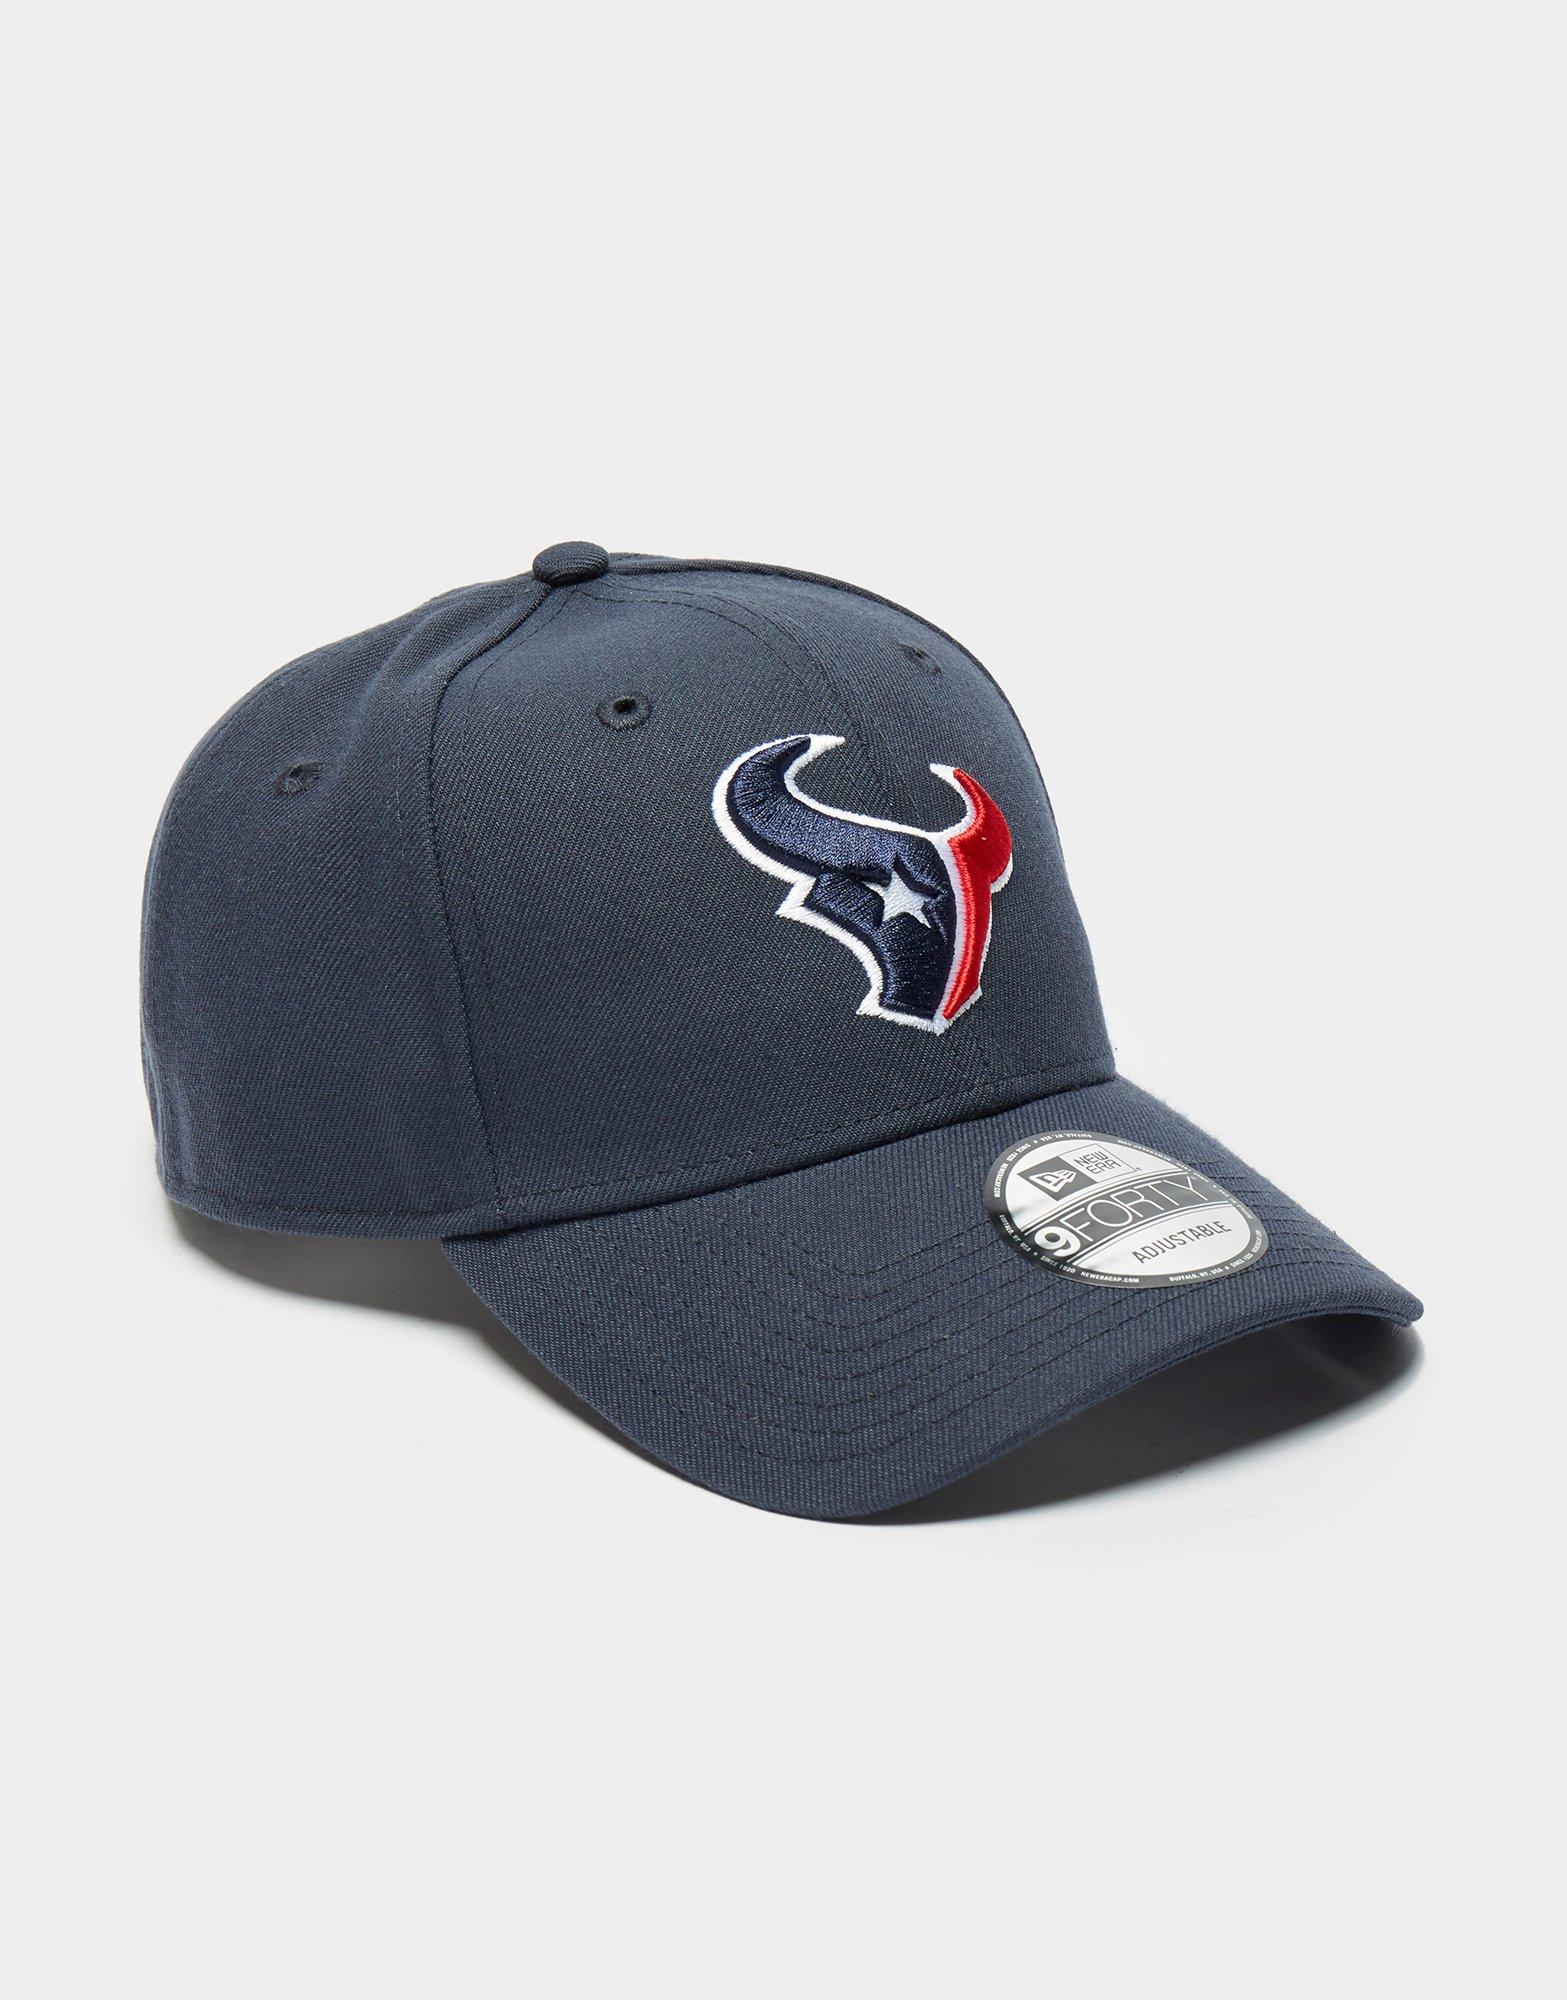 nfl texans hat